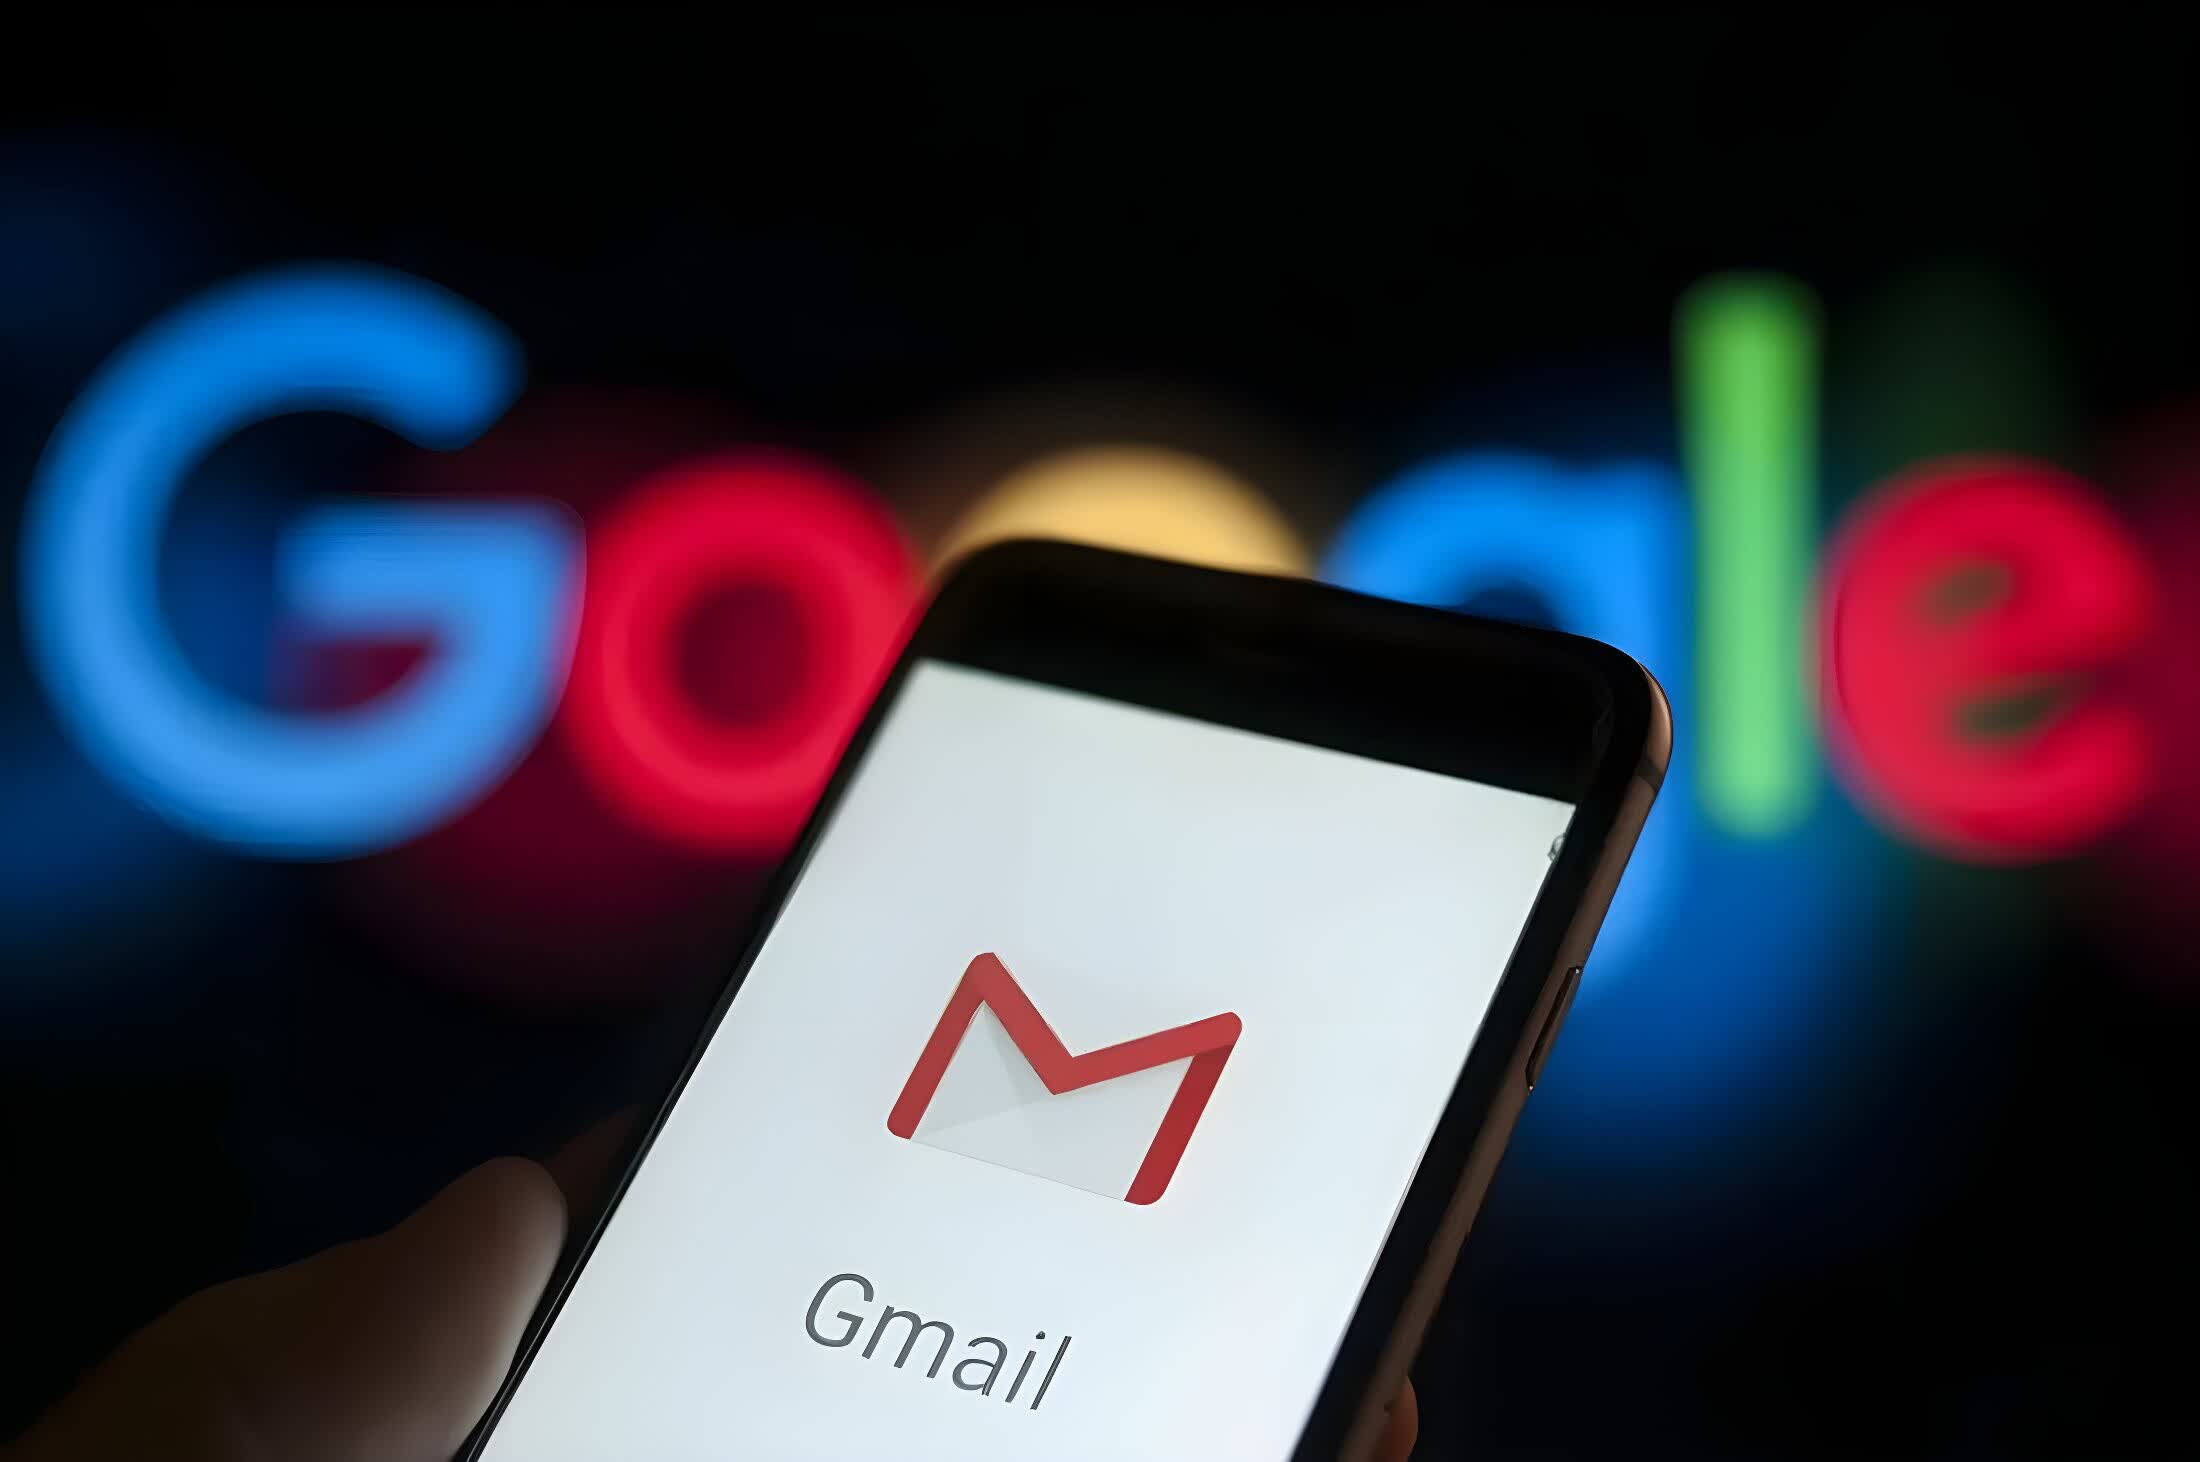 Google confirma que definitivamente no eliminará Gmail después de que el engaño se vuelva viral